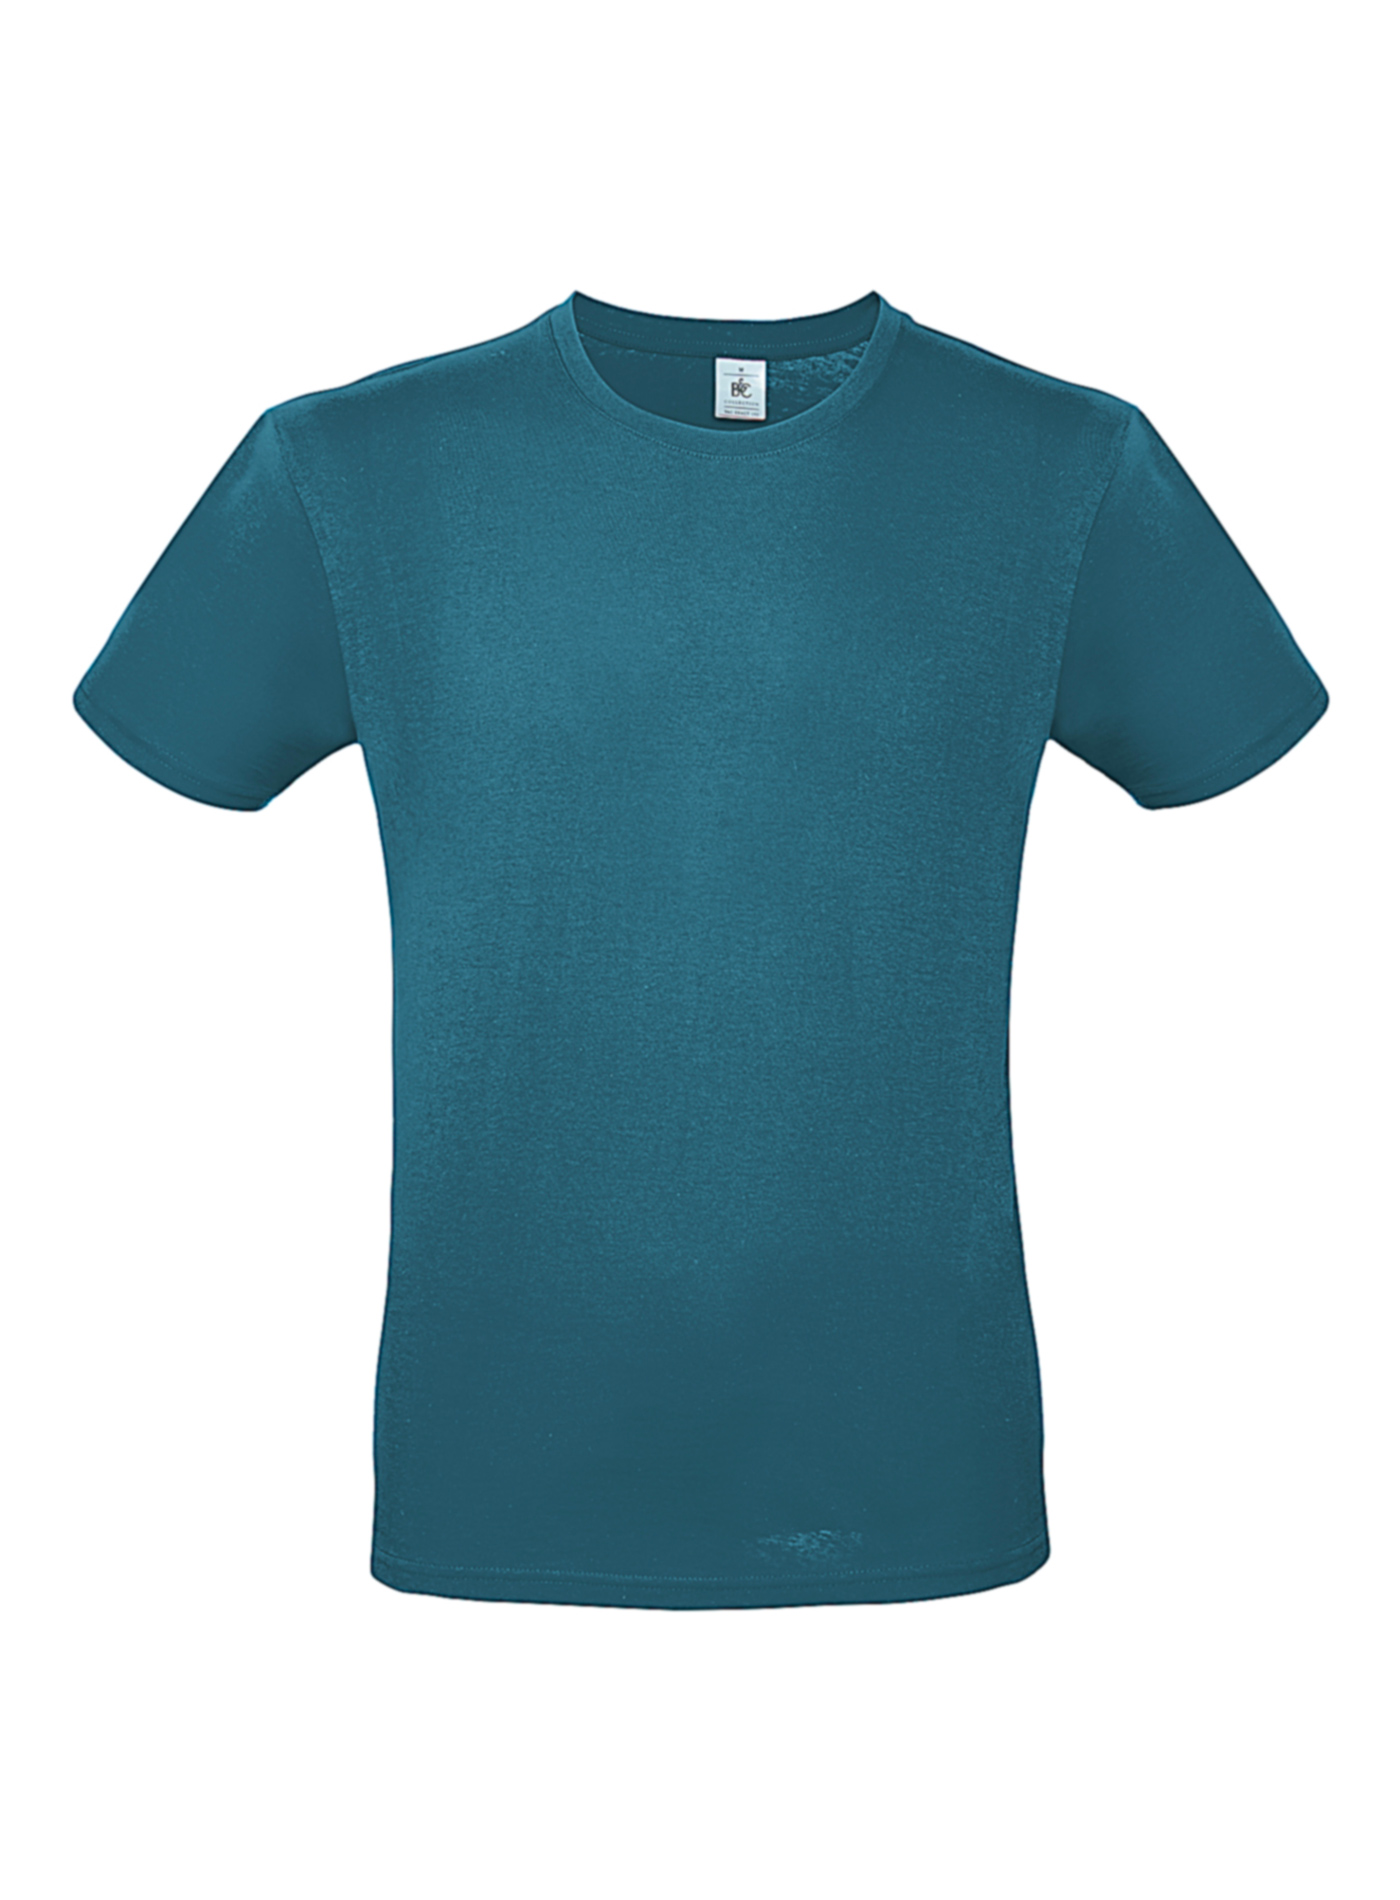 Pánské tričko B&C - Modrozelená XXL